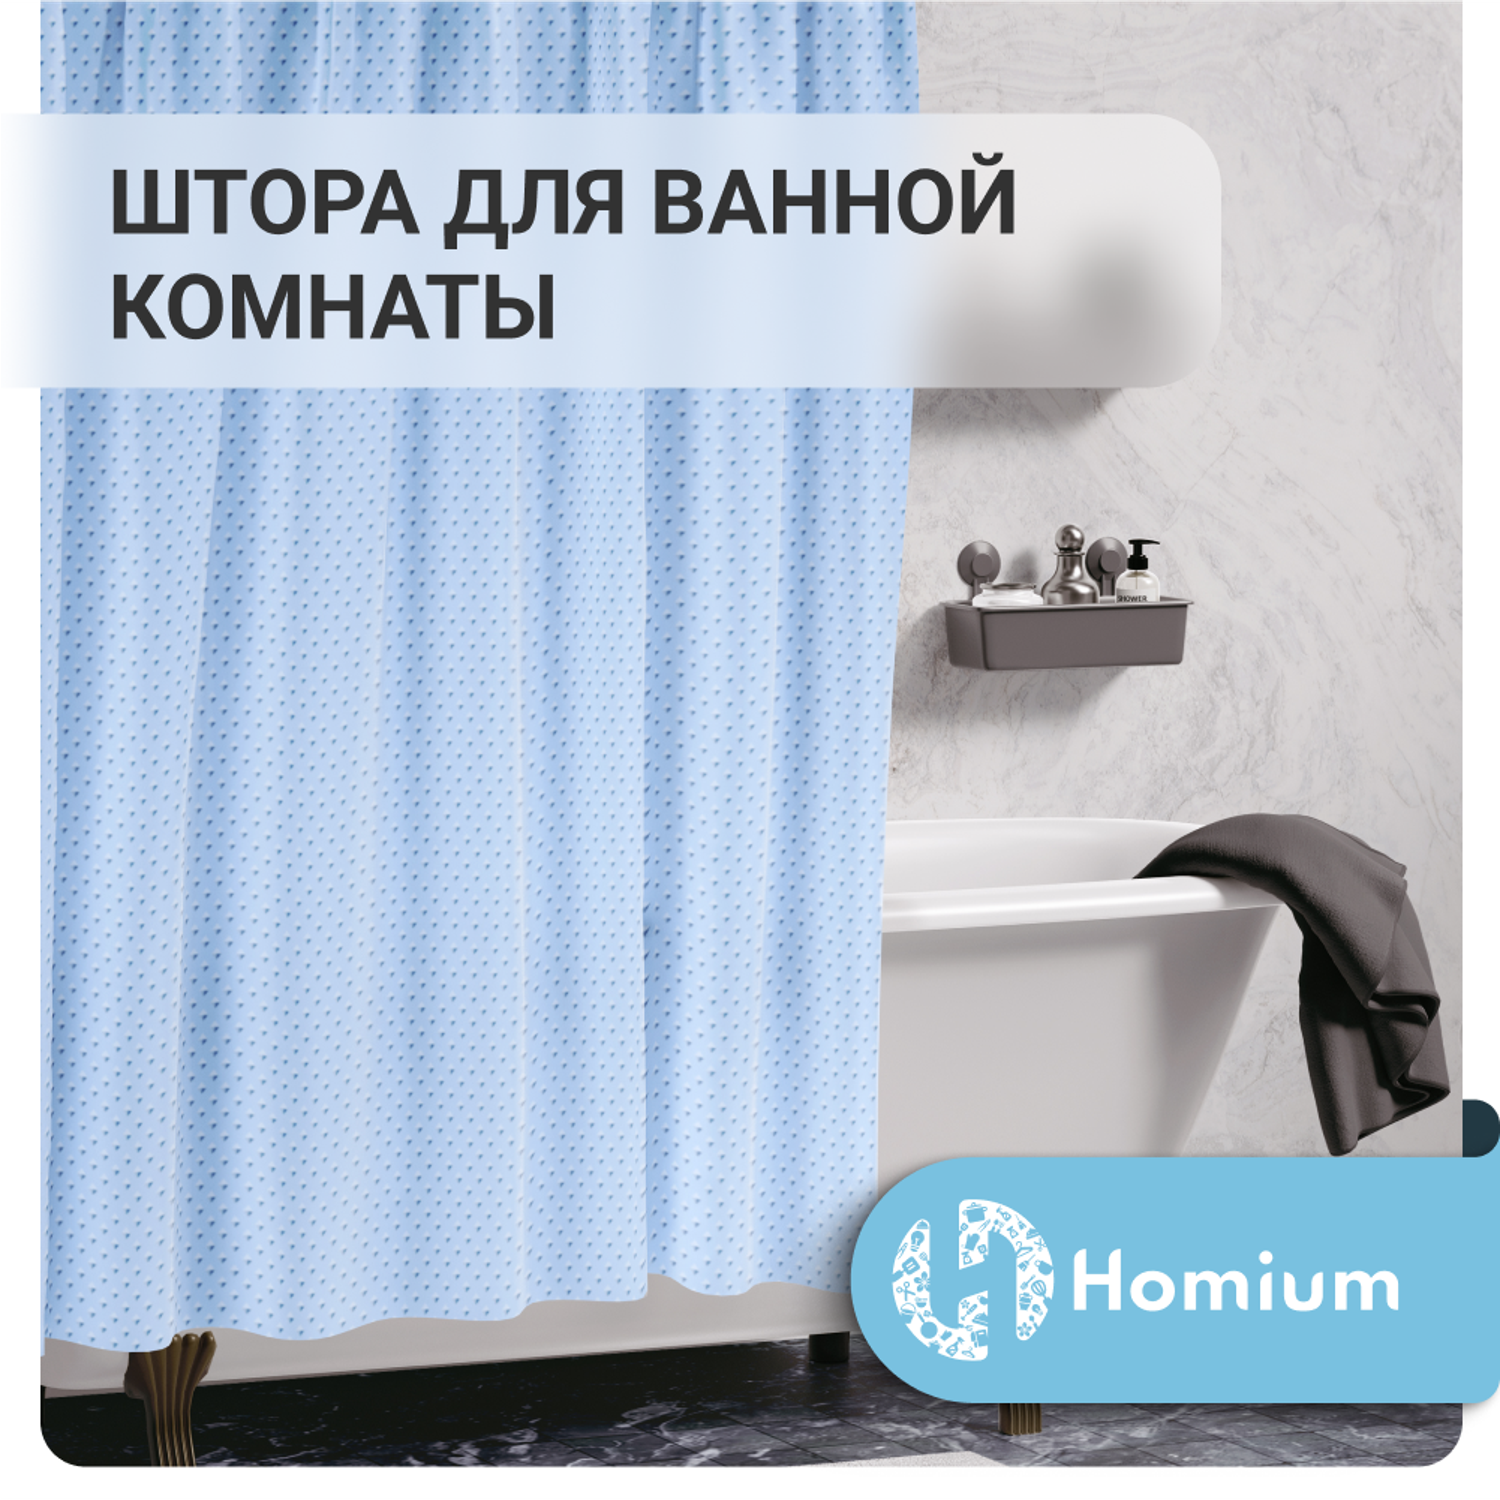 Штора для ванной комнаты ZDK Homium Bath Classic цвет голубой размер 180*180 см - фото 2